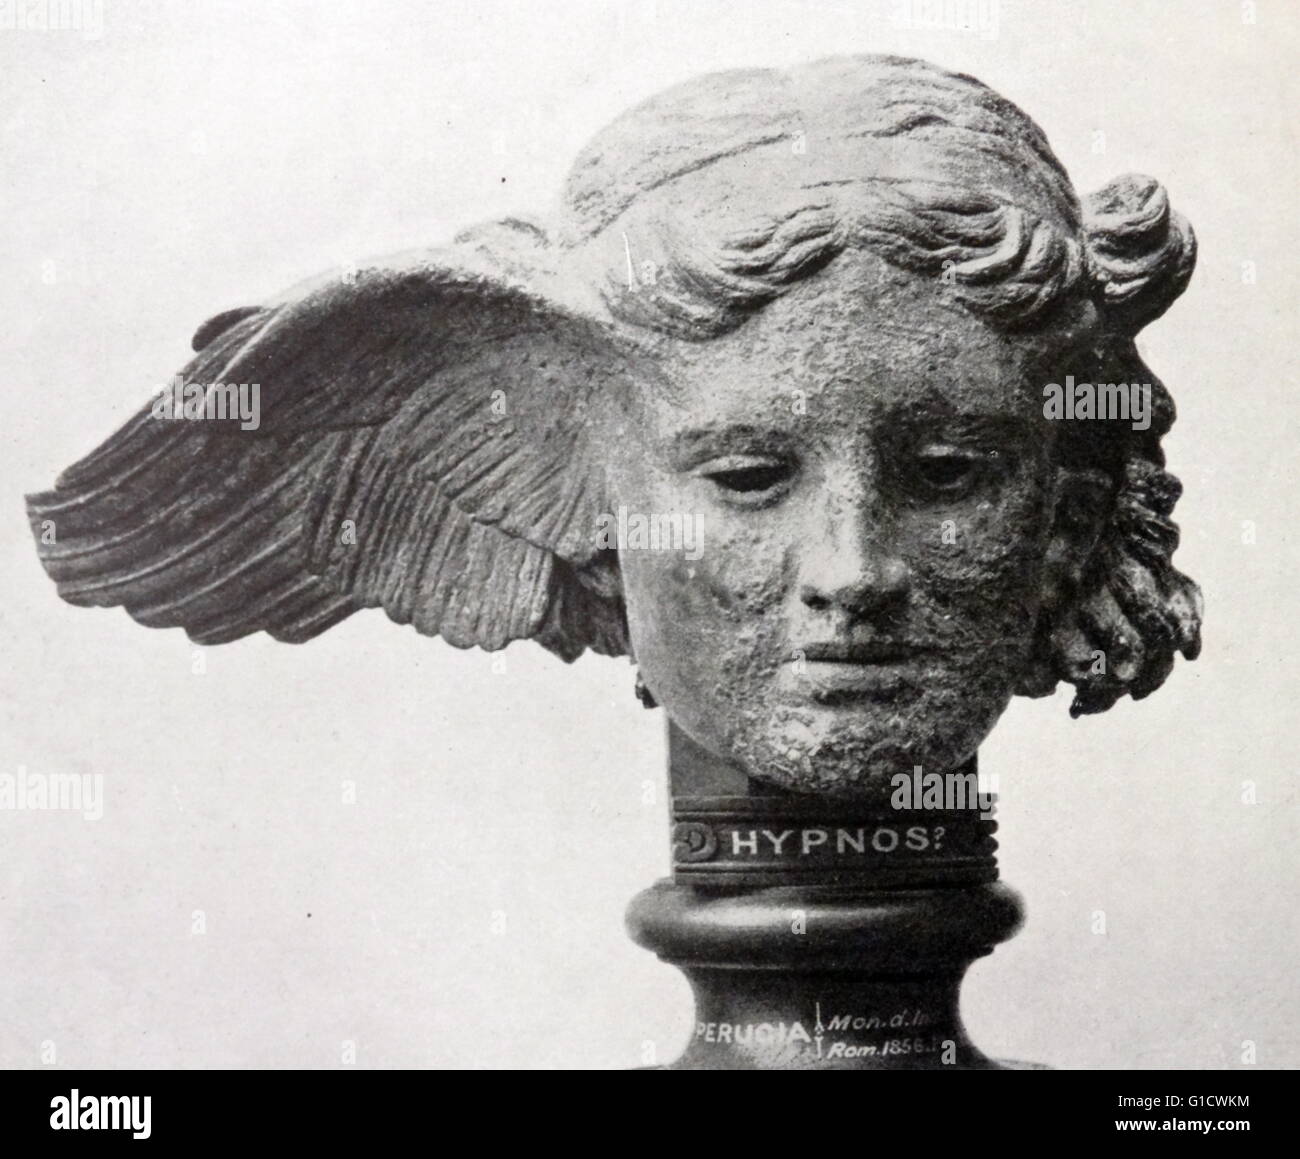 Bronzekopf von Hypnos, dem griechischen Gott des Schlafes. Vom 1. Jahrhundert n. Chr. Stockfoto